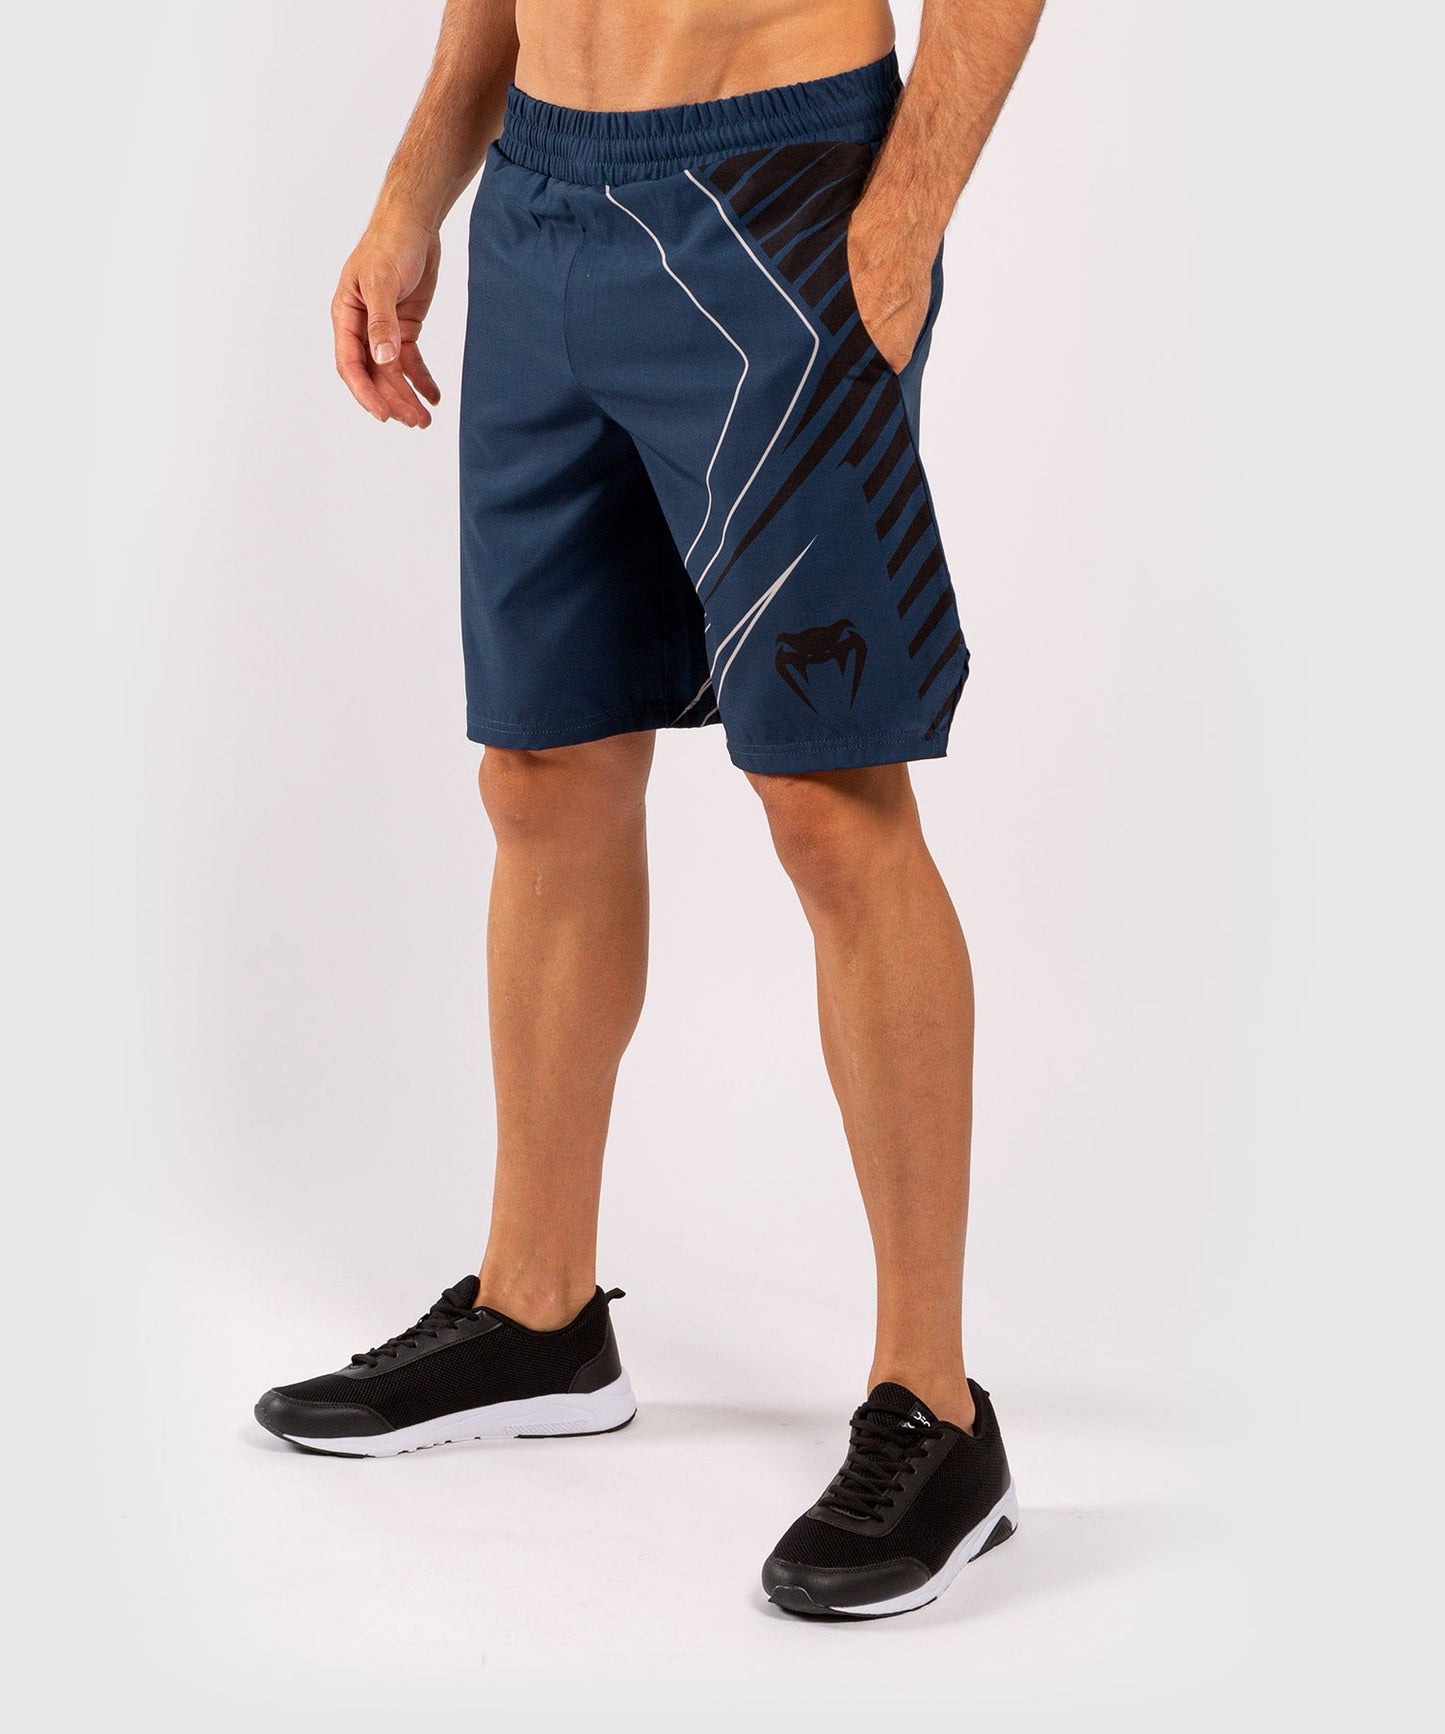 Venum Contender 5.0 Sport shorts - Navy/Sand